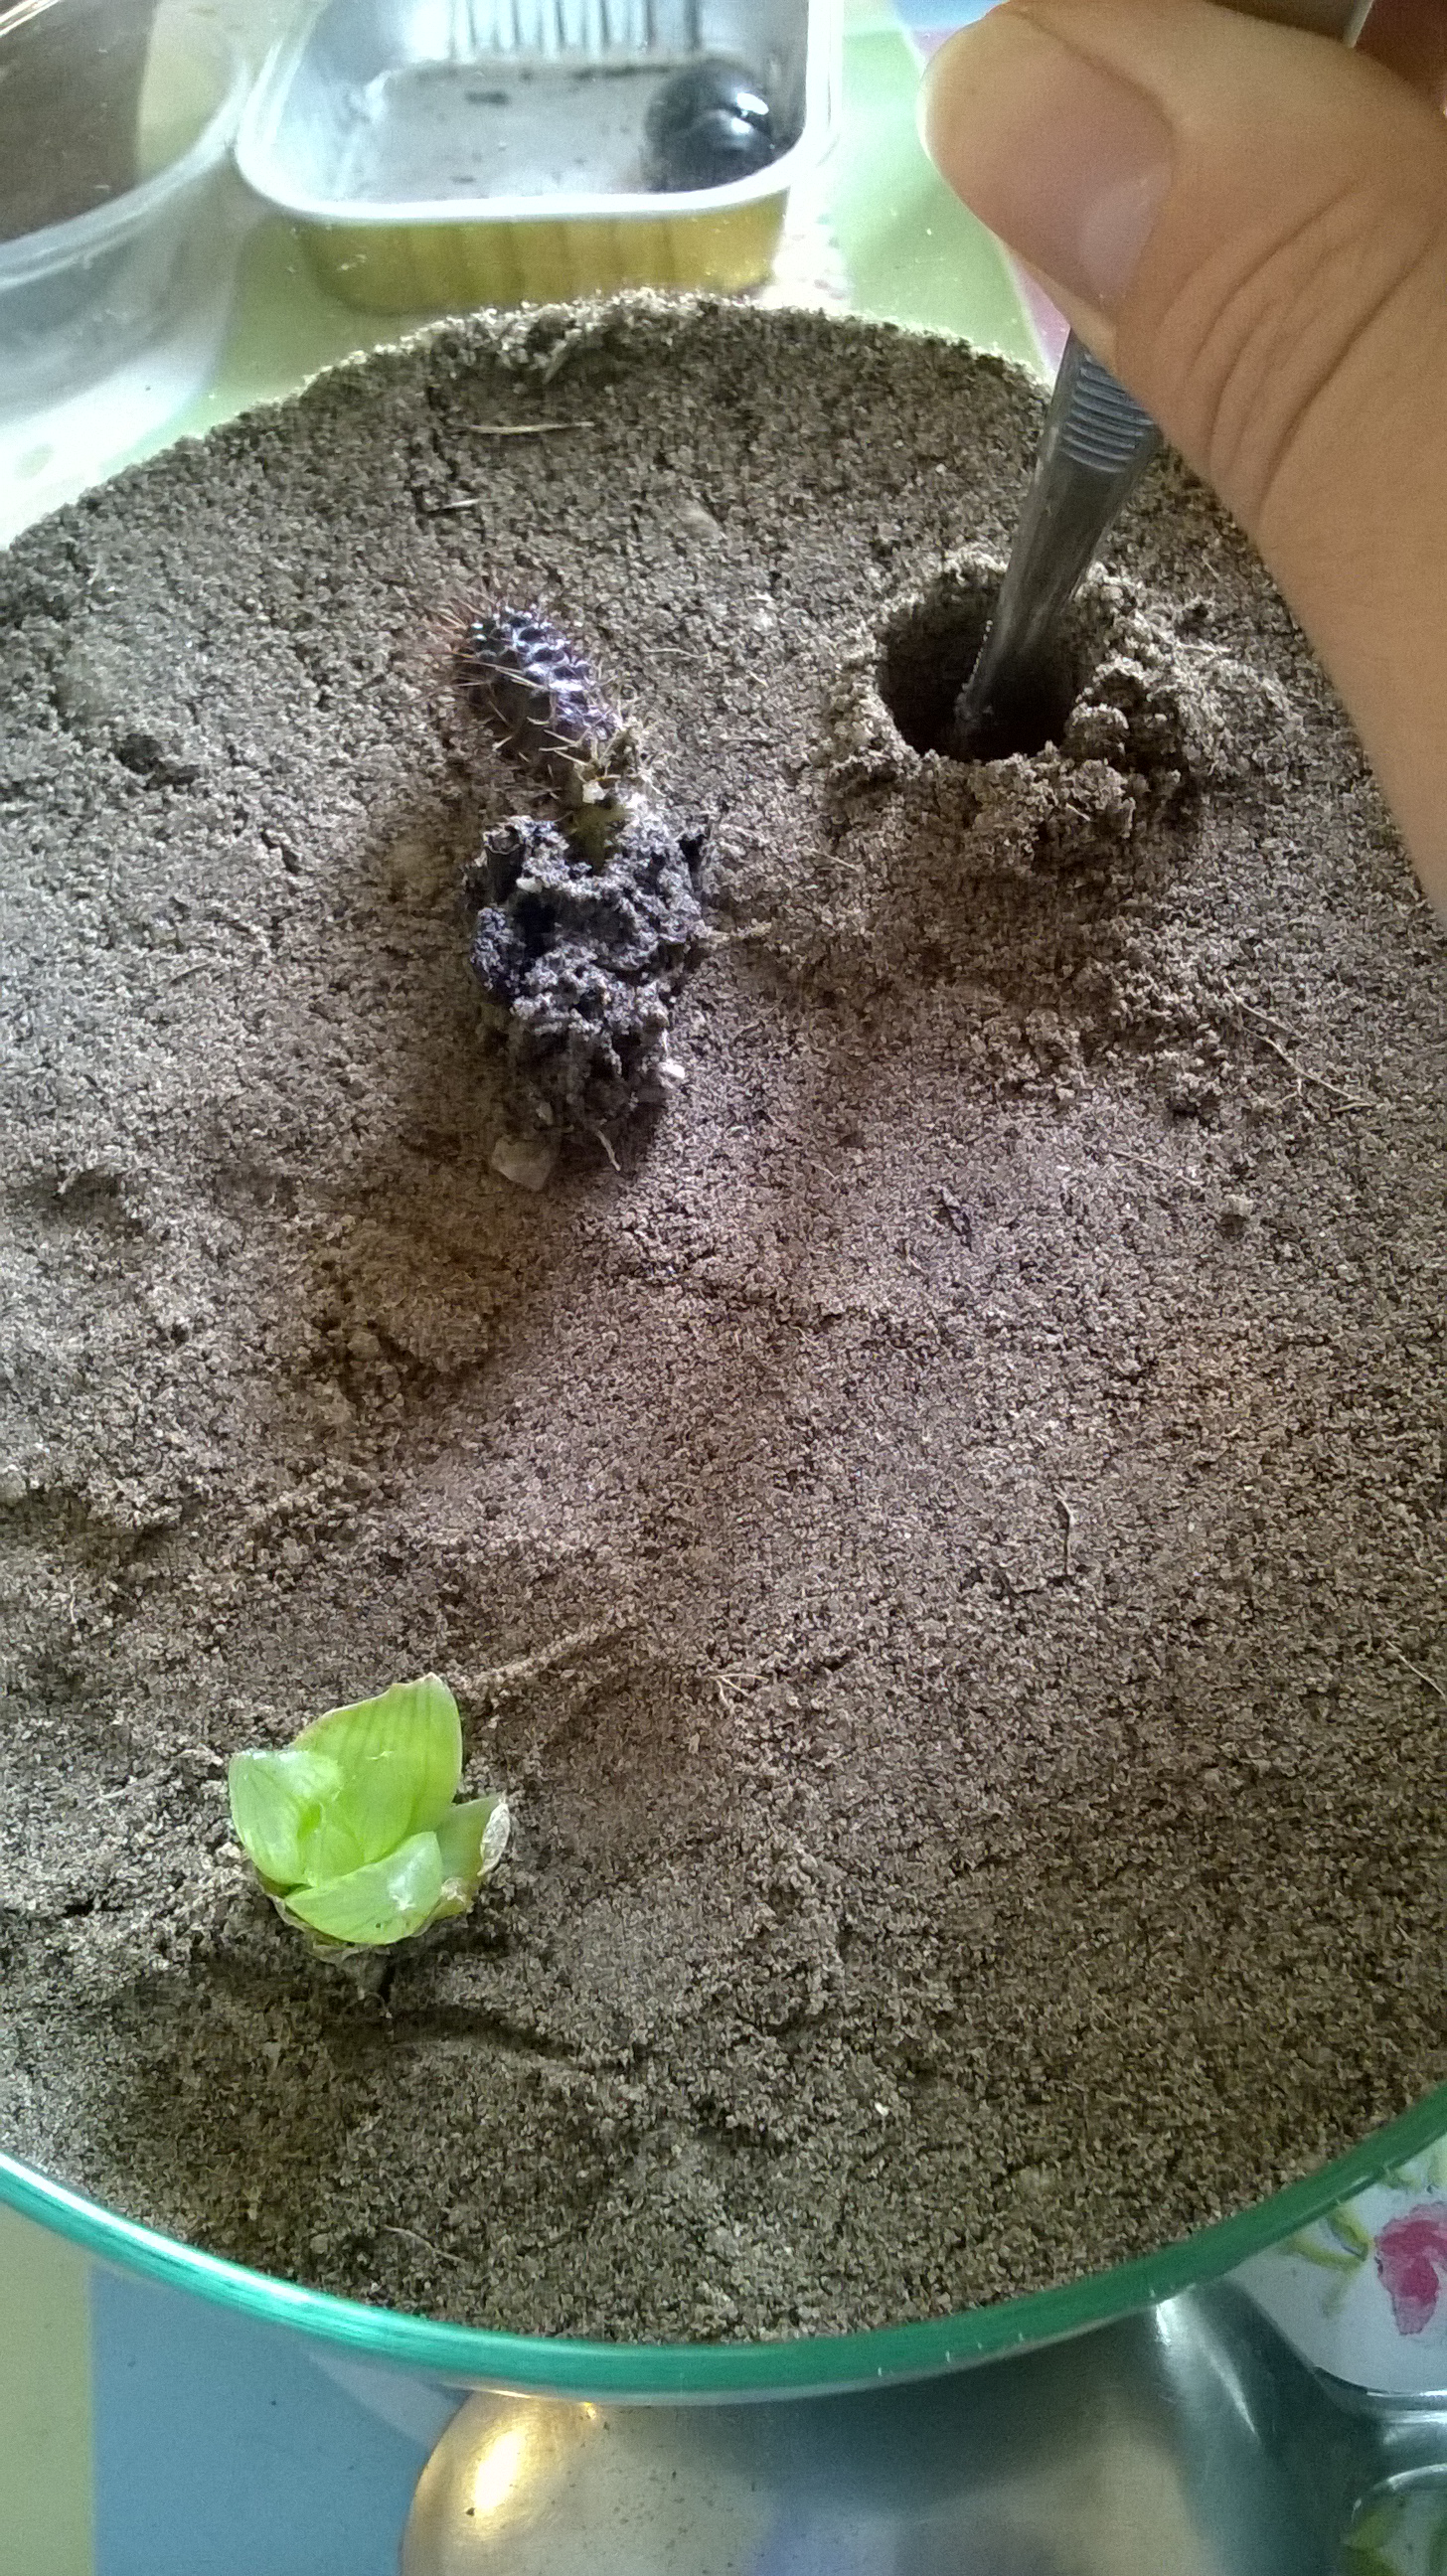 Egy csipesz segítségével olyan mély lyukakat fúrtam a földbe hogy a növények gyökerét teljesen bele tudjam illeszteni és körbe tudjam őket takargatni homokkal. Ujjbeggyel mindet óvatosan körül kell nyomkodni, így tömörítem a talajt és stabilizálom a növényt.